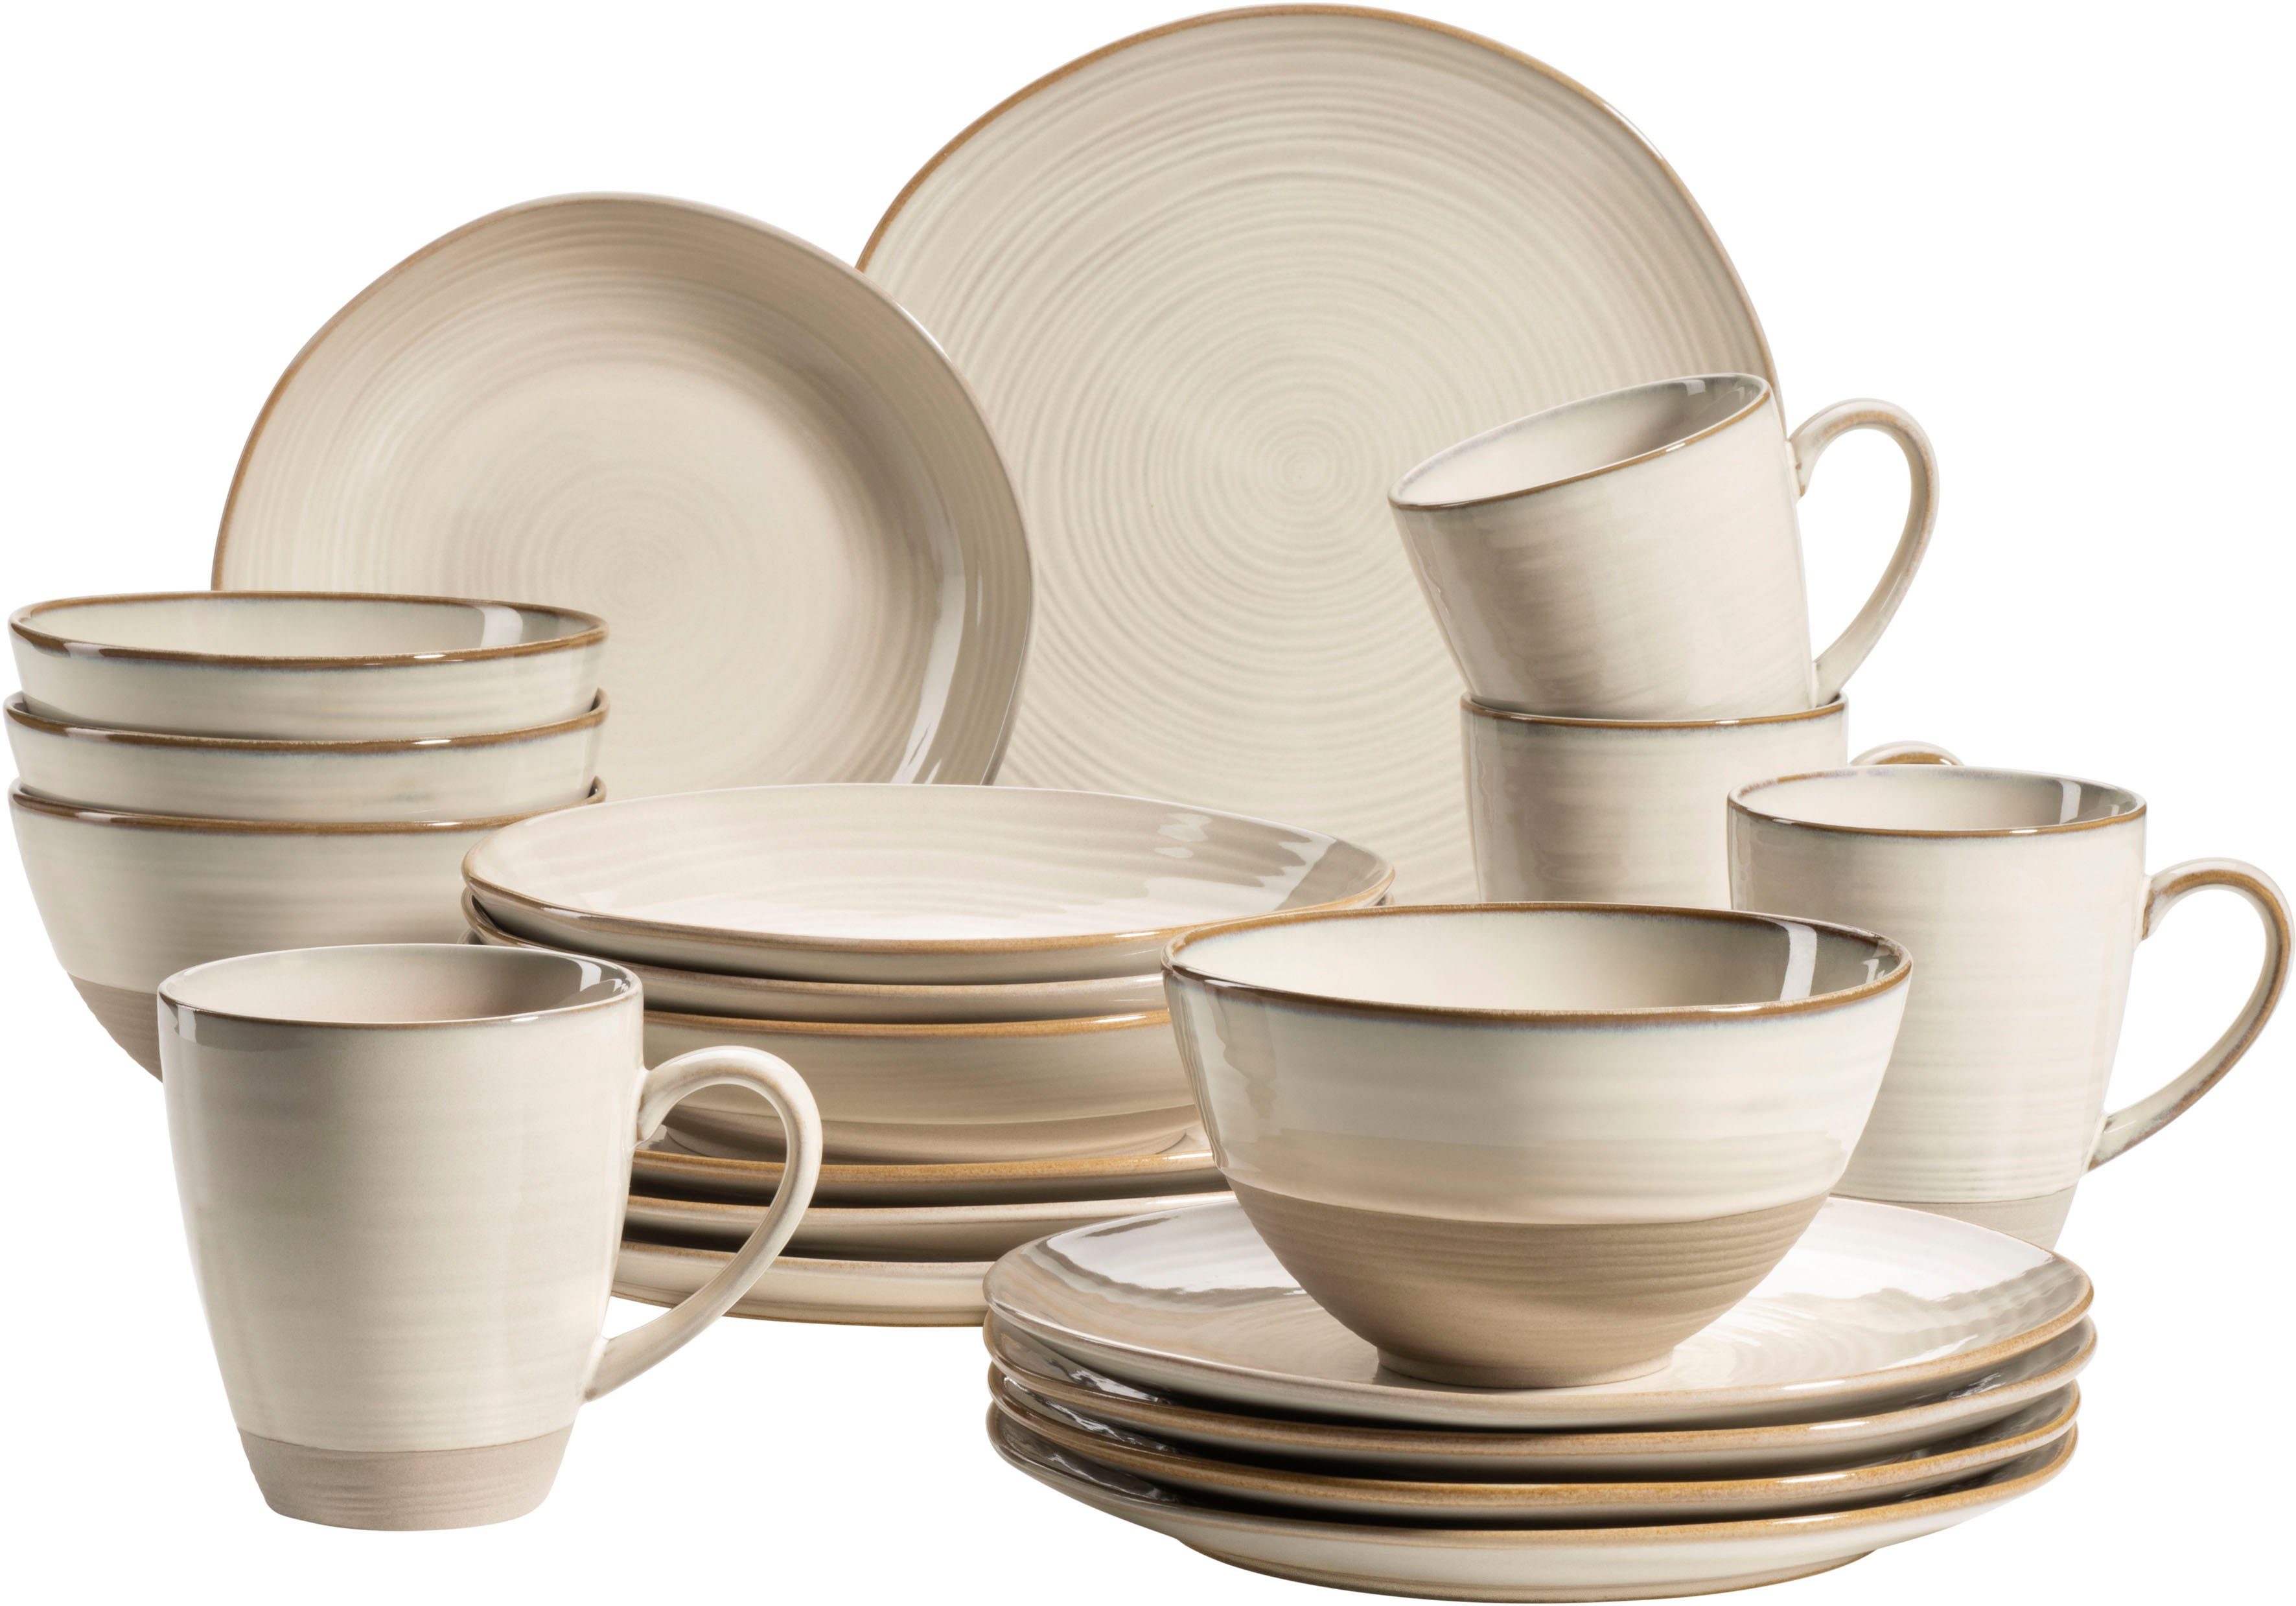 Beige Keramik Geschirr-Sets online kaufen | OTTO